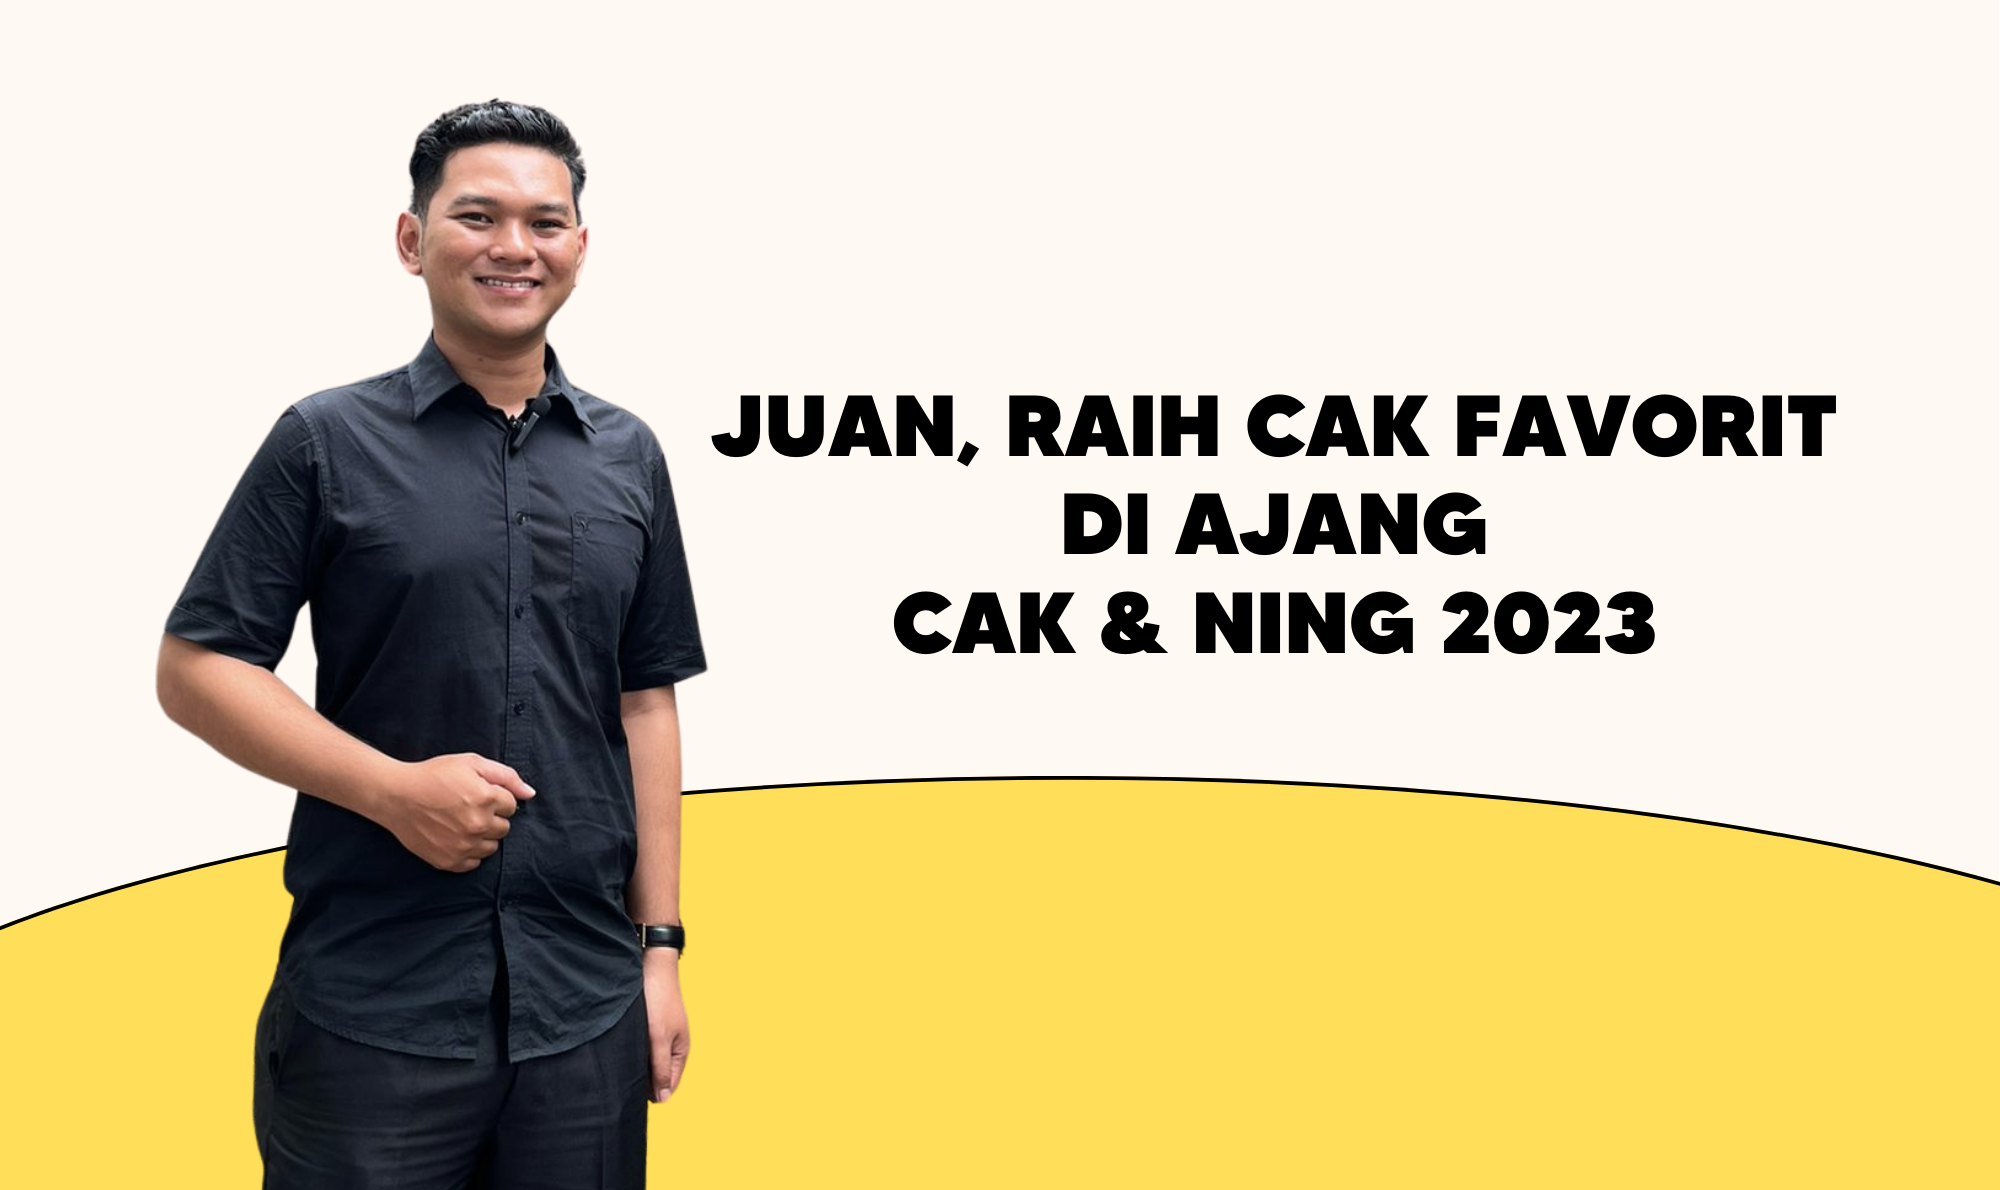 Juan, Mahasiswa UKWMS Raih Cak Favorit di Ajang Cak & Ning 2023